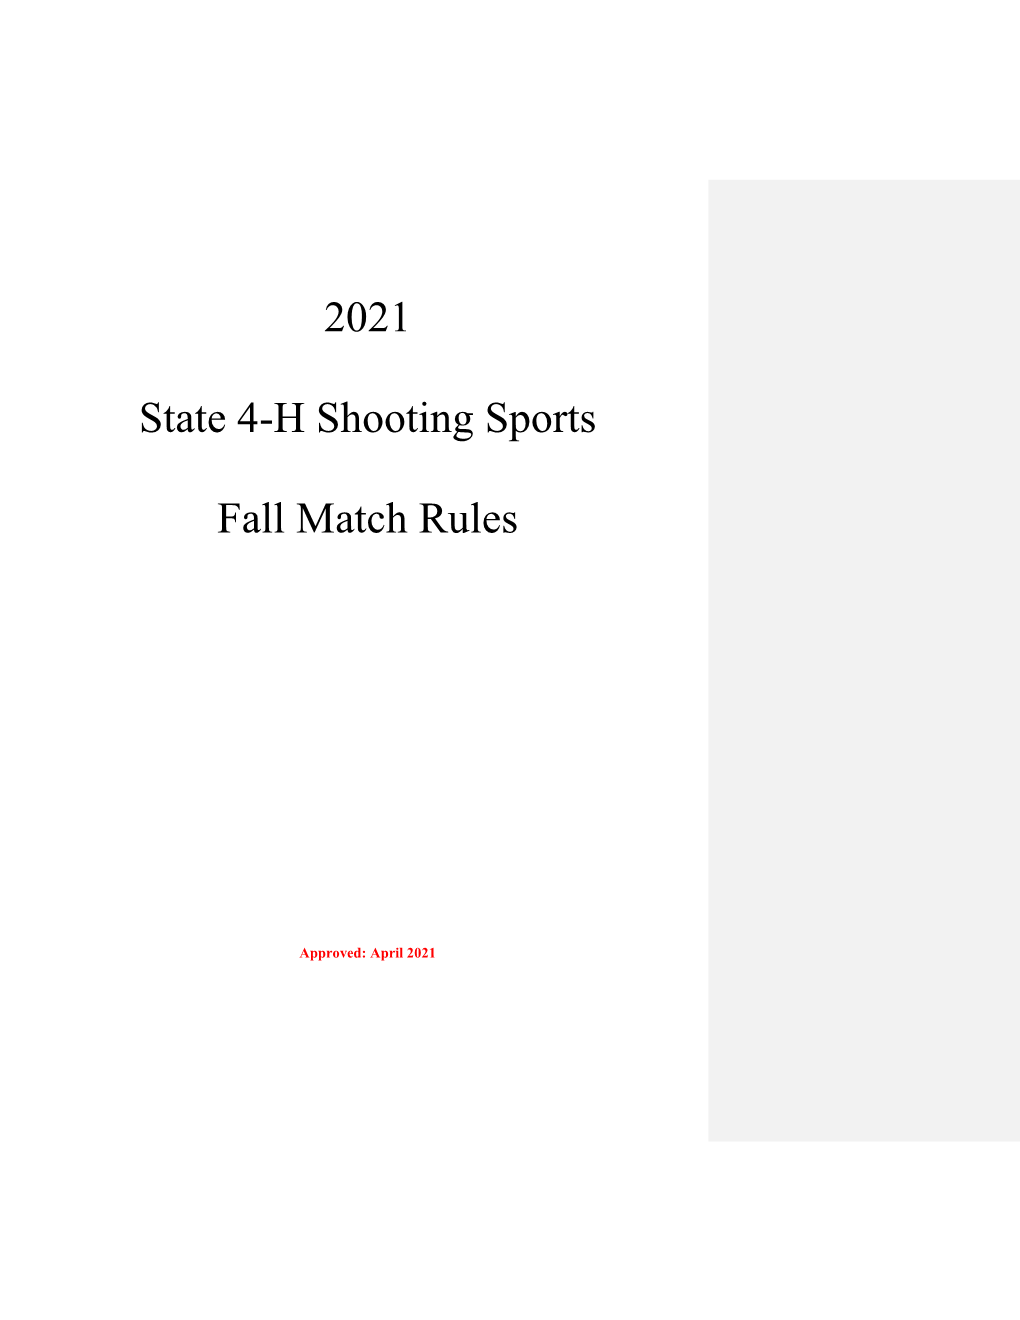 2021 Fall State Match Rules